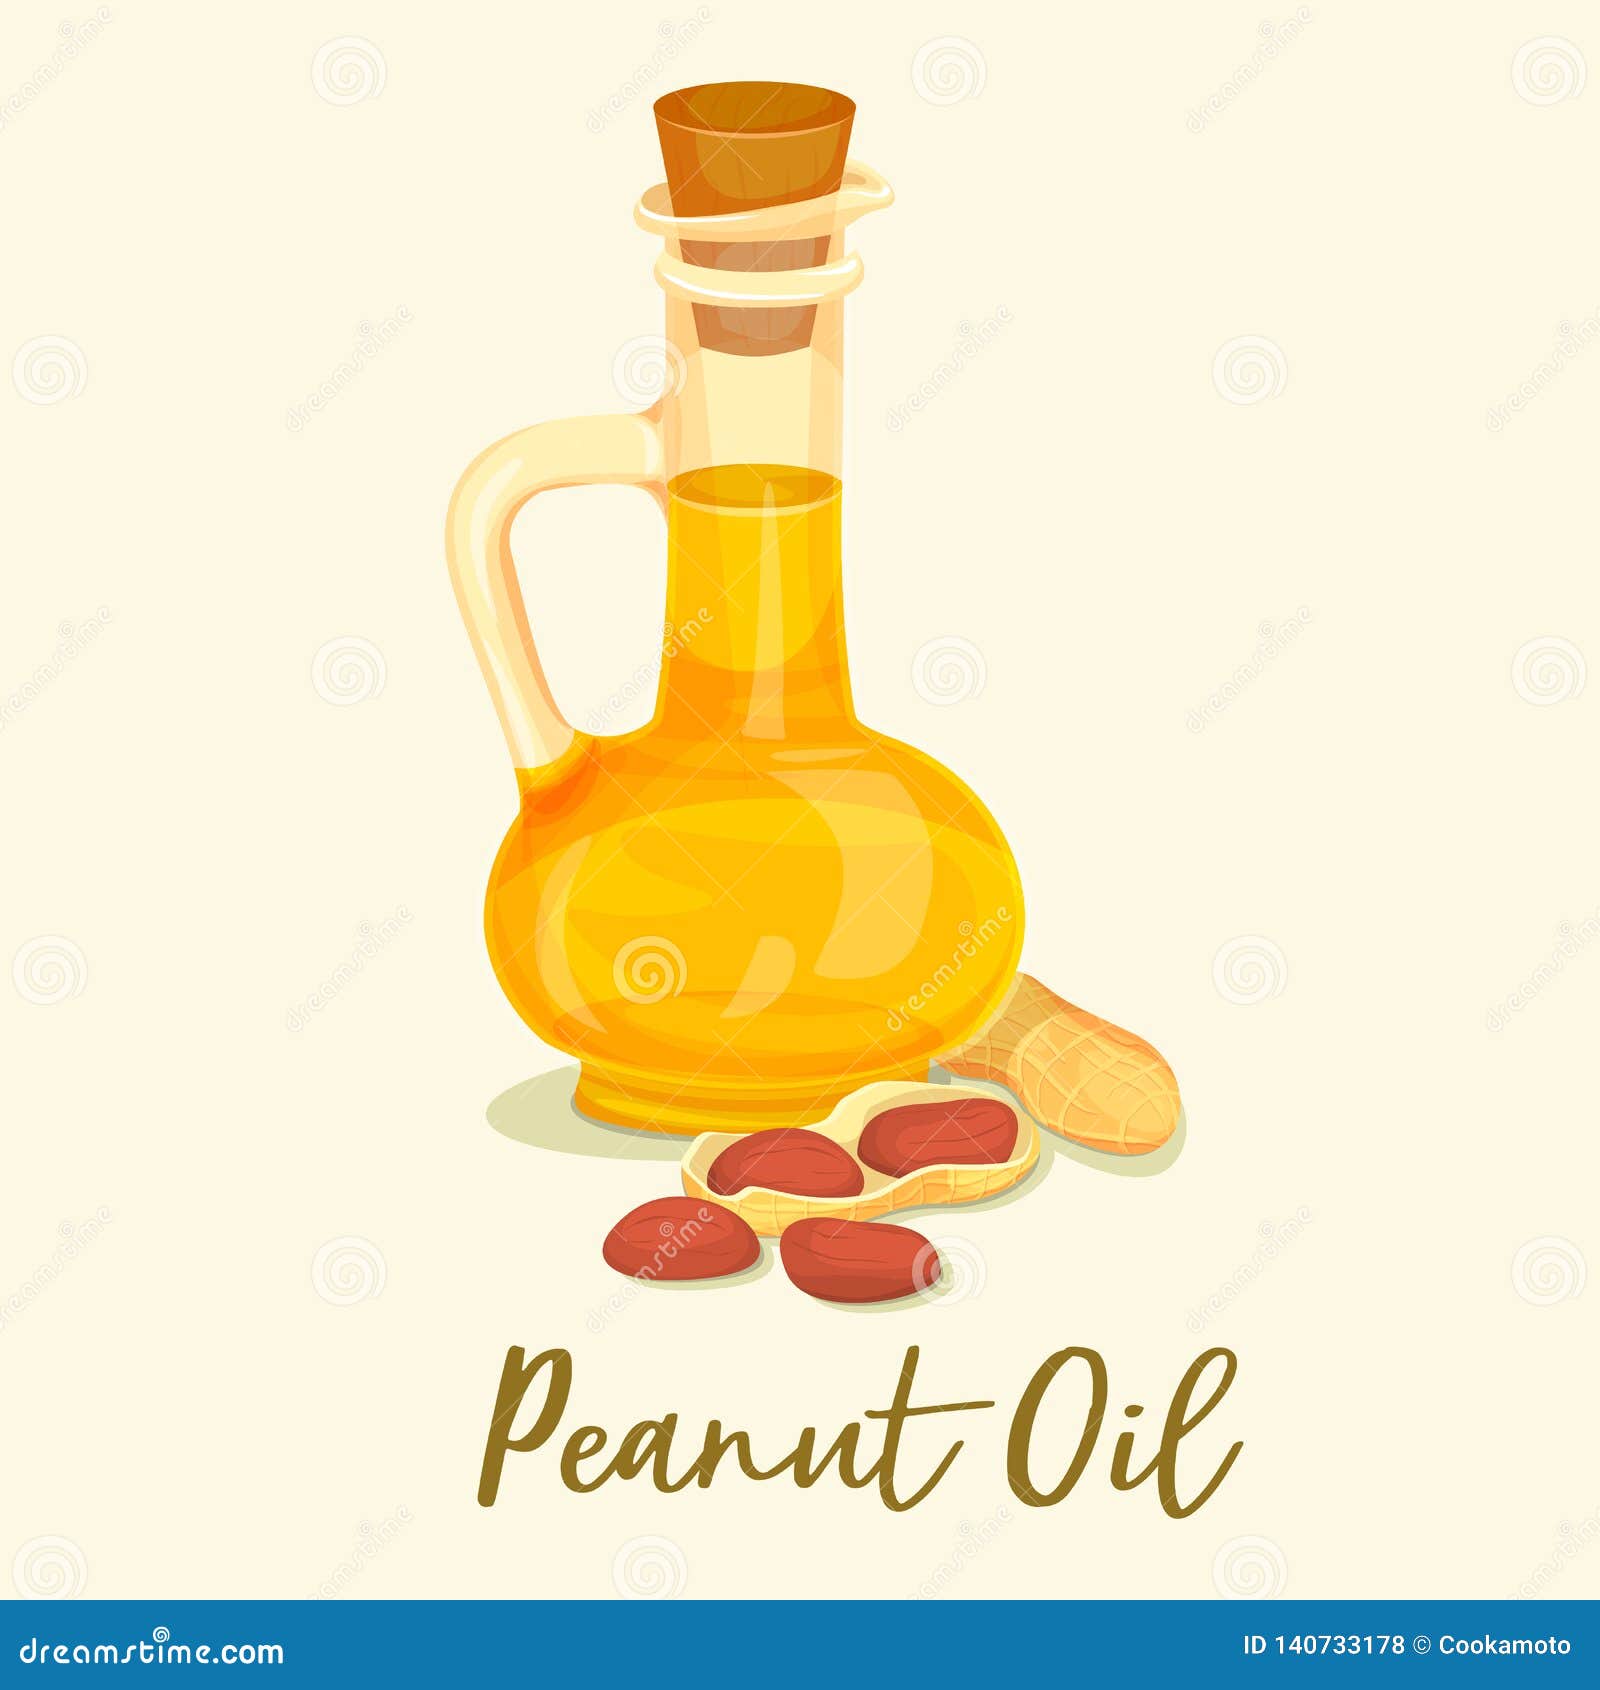 groundnut or peanut oil in bottle or jar near nut